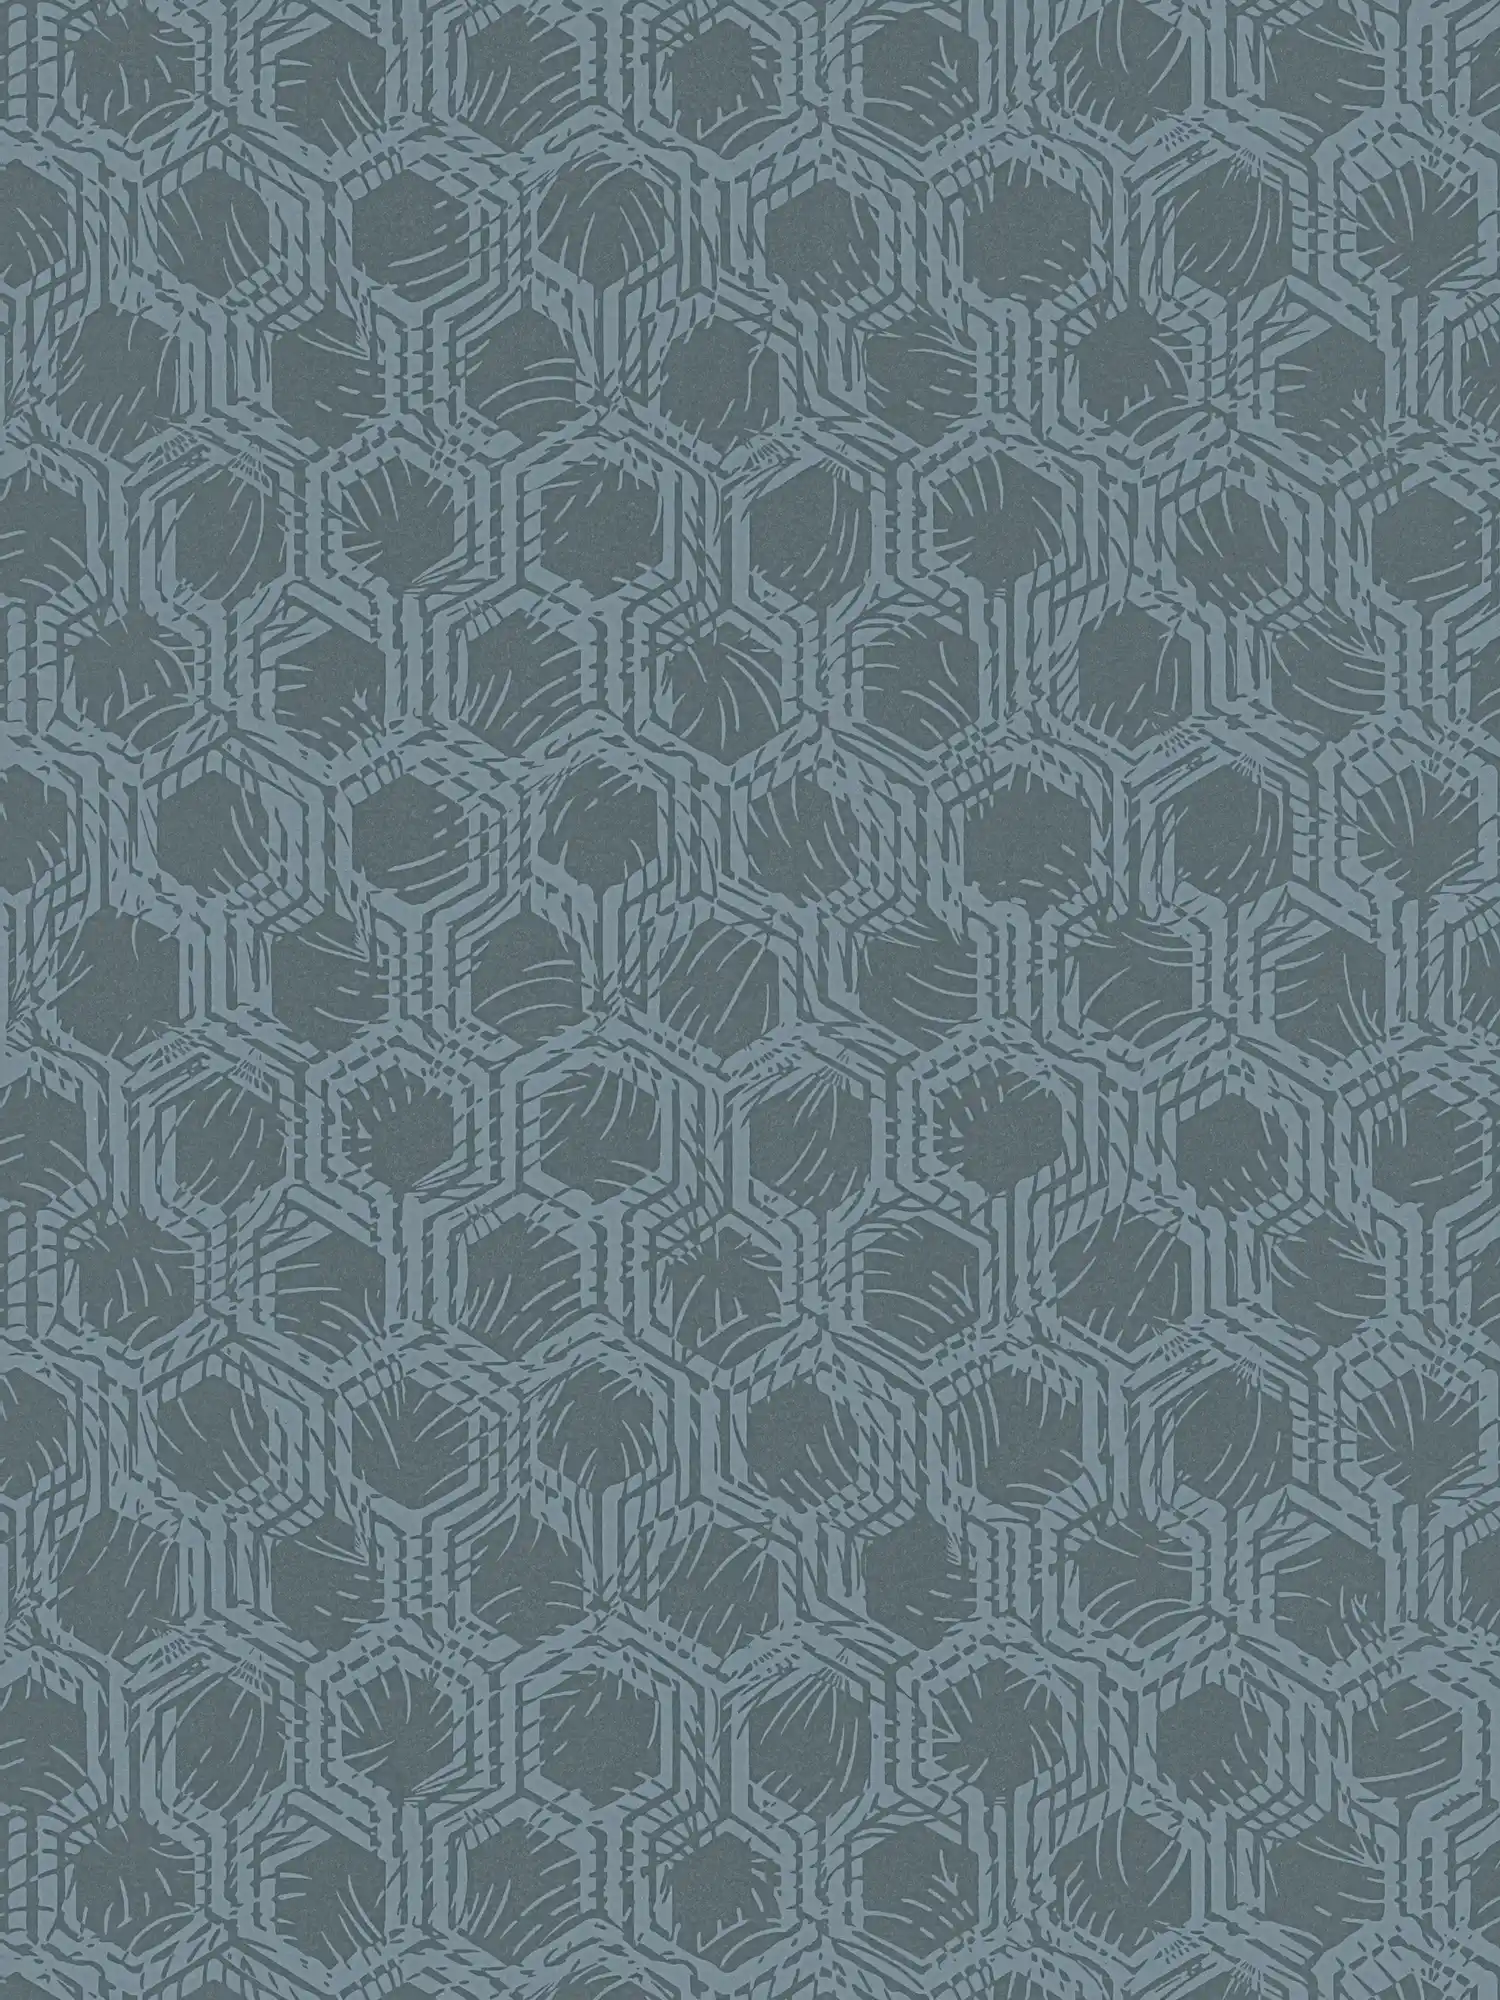 Hexagon patroon behang in ethno stijl - blauw, metallic
